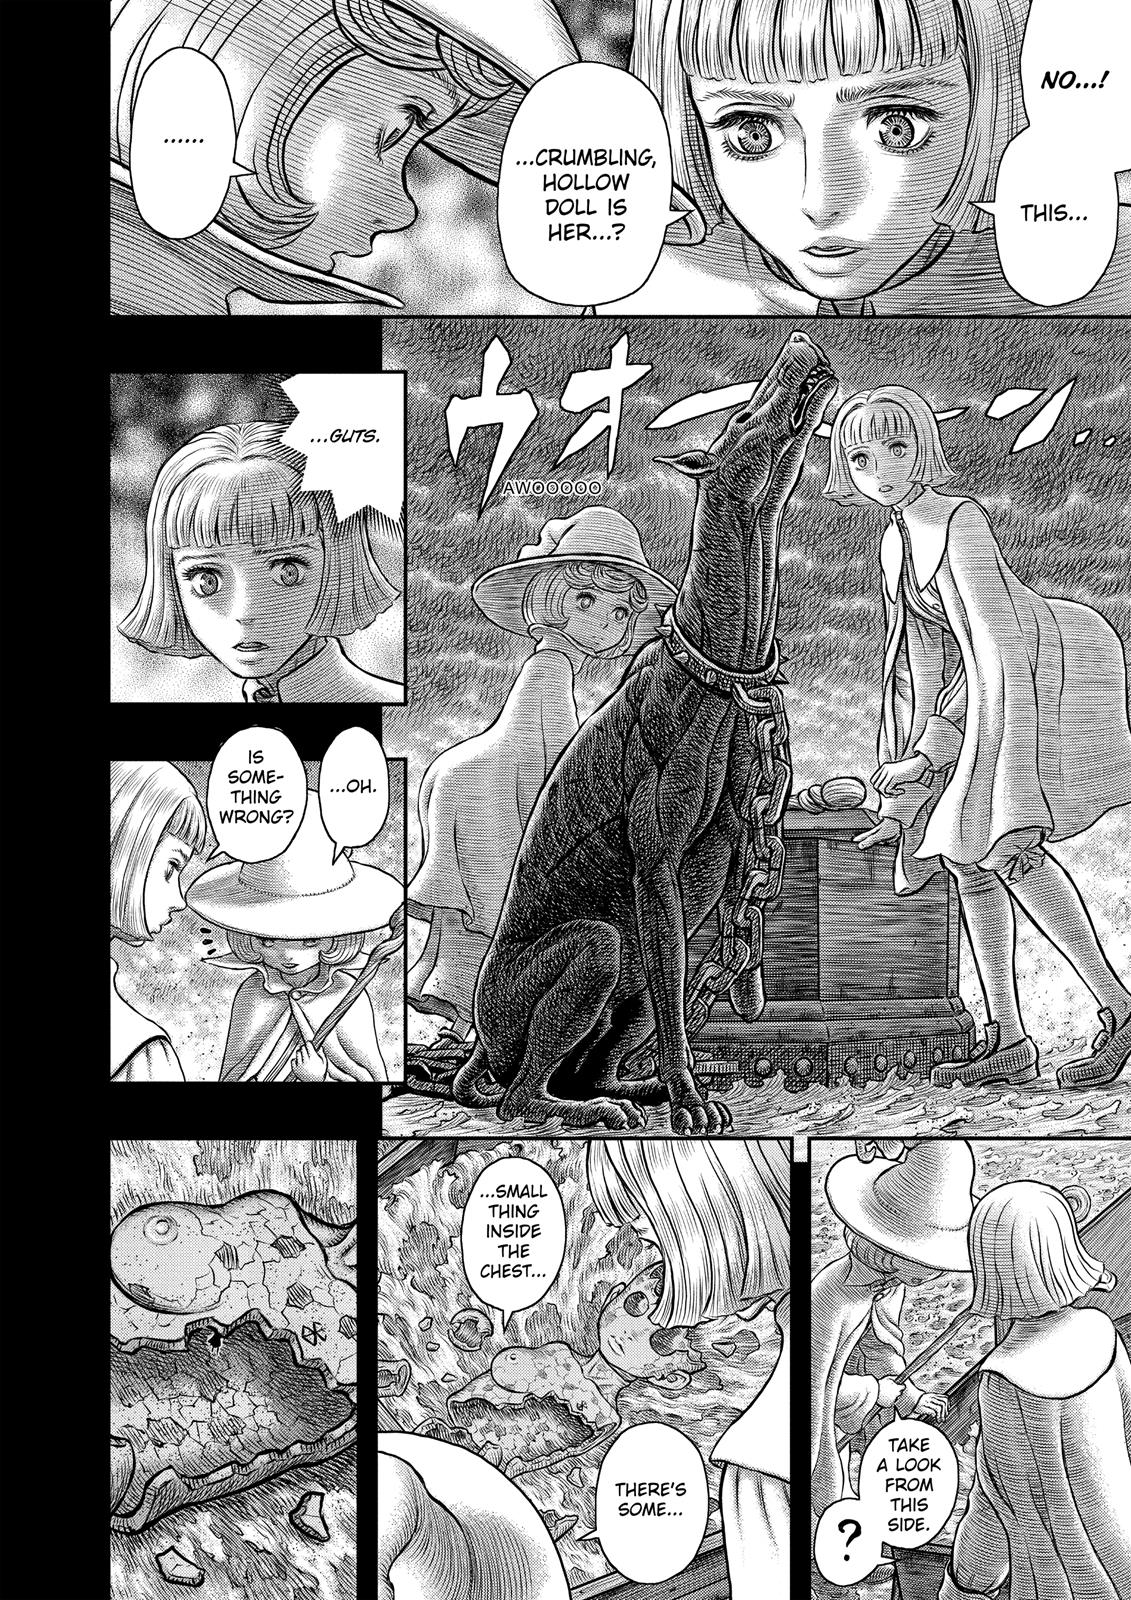 Berserk Manga Chapter 348 image 15